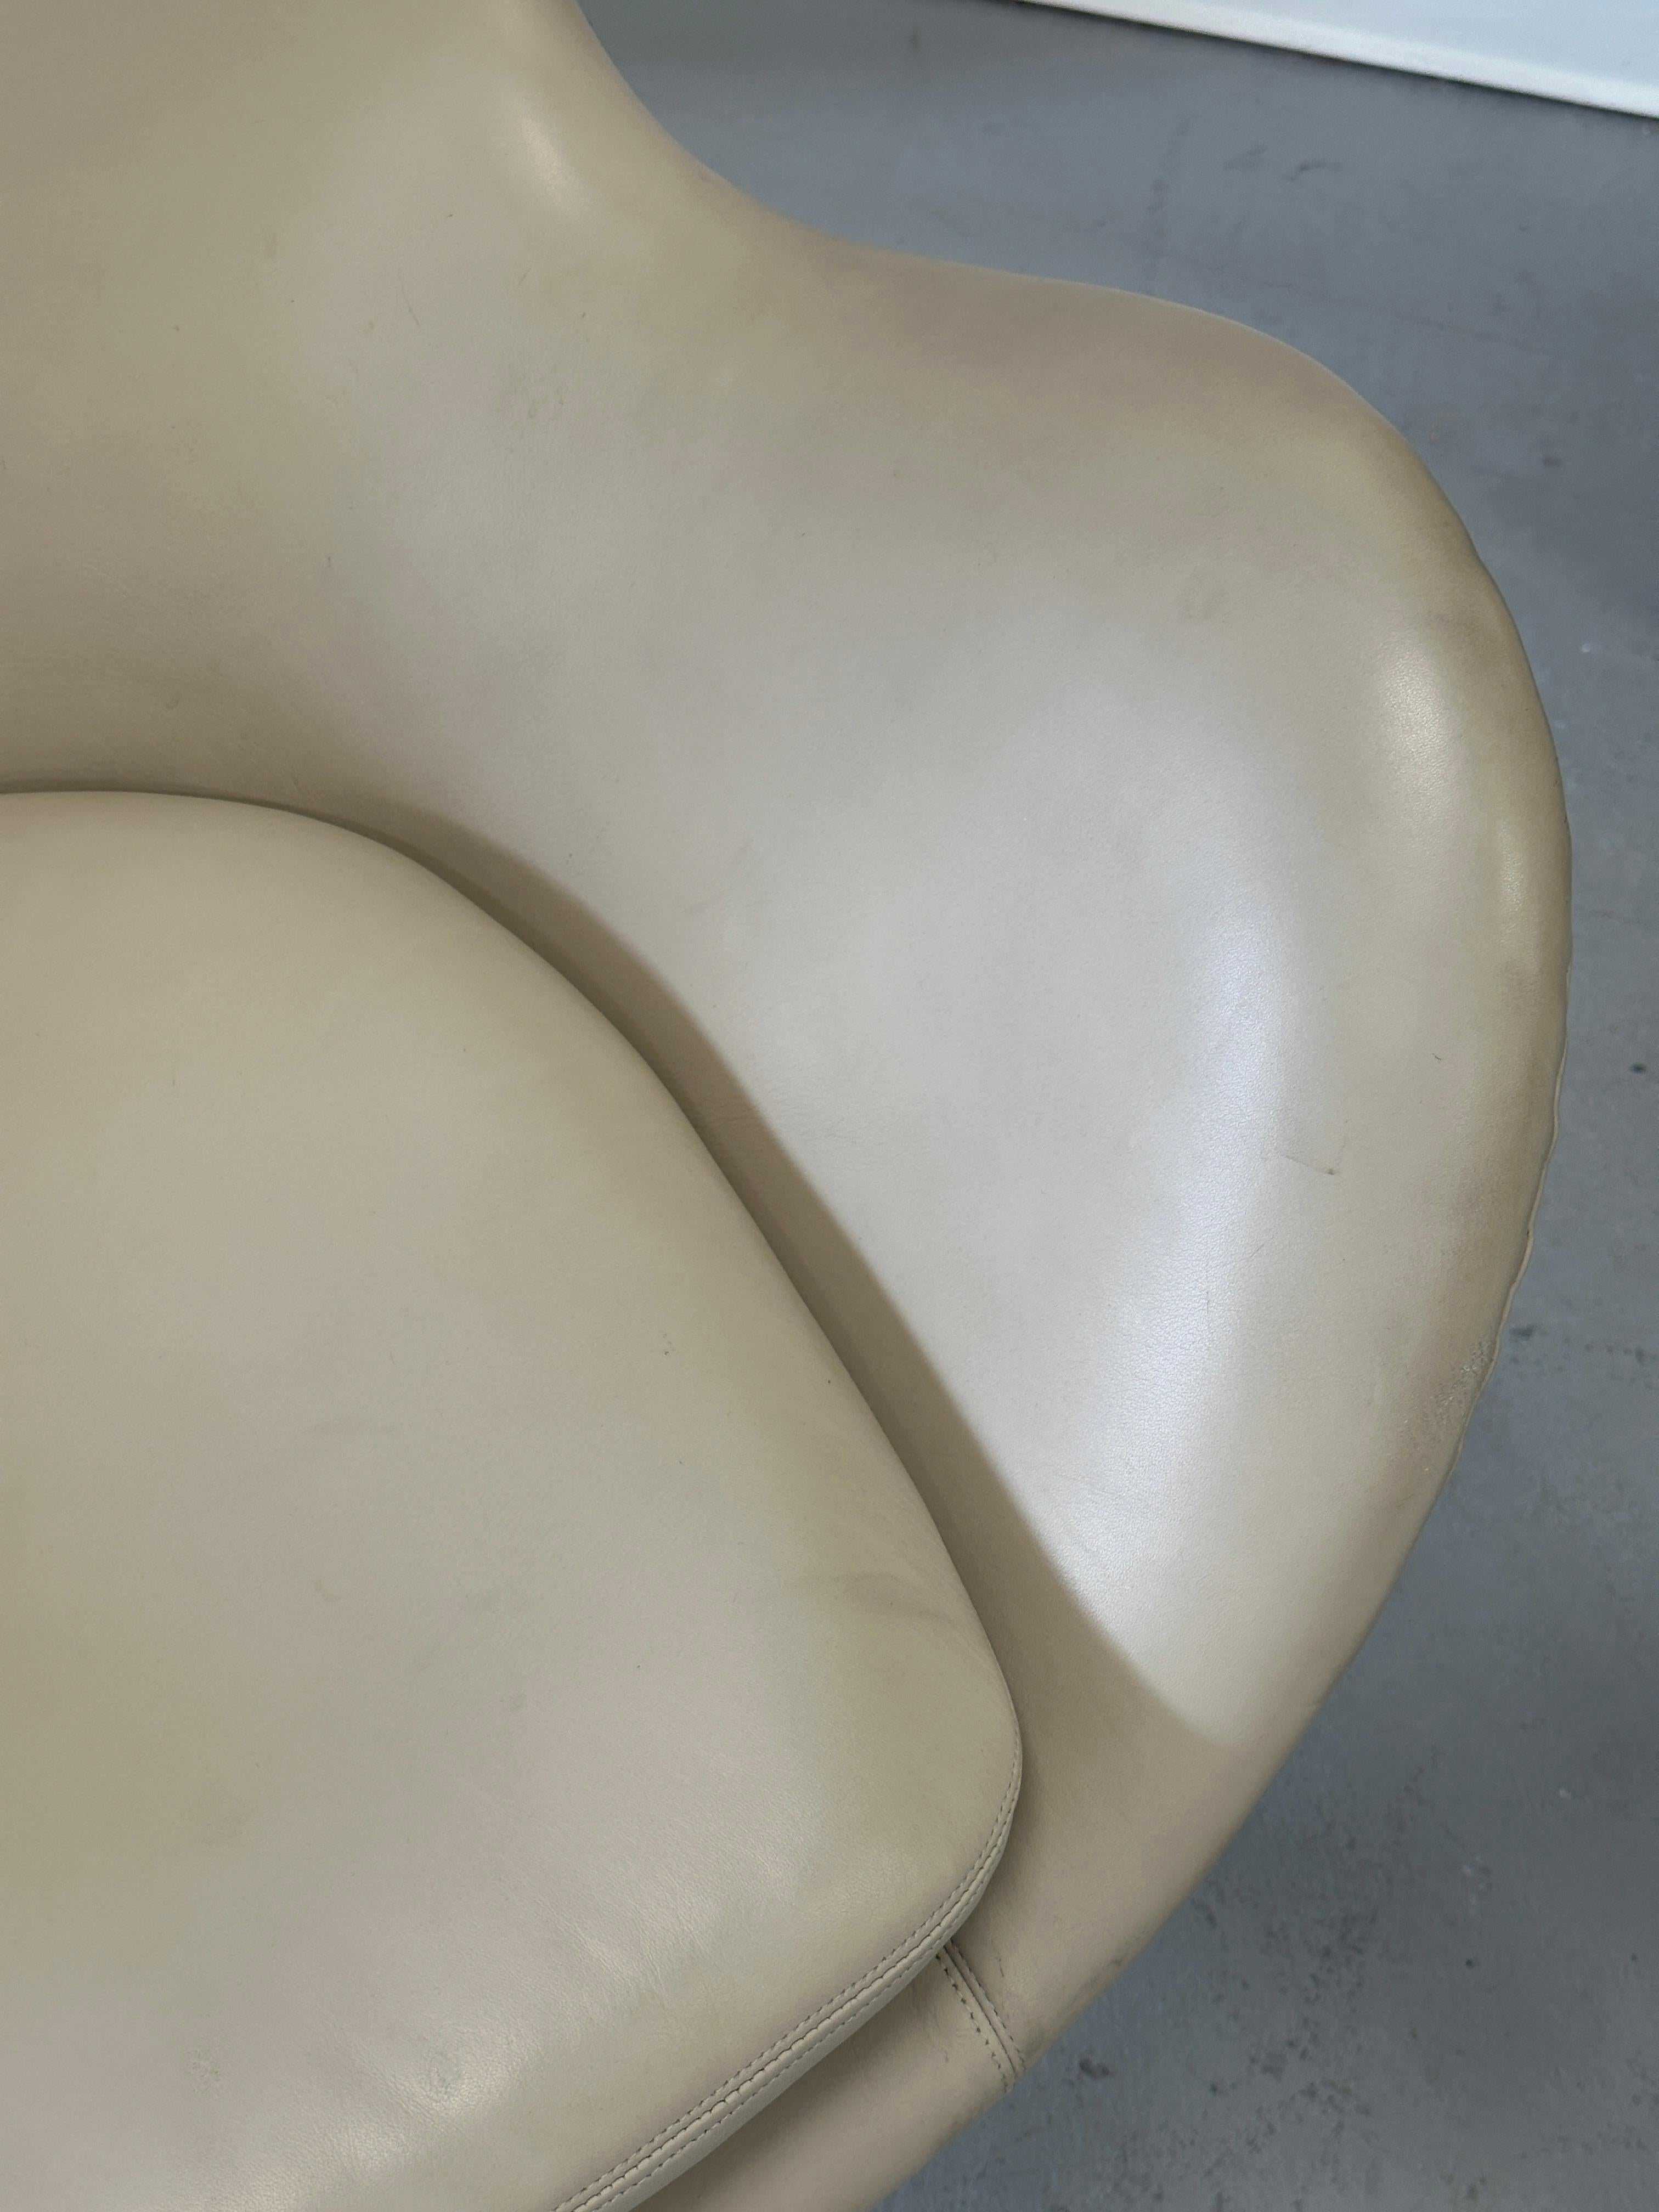 1966 Arne Jacobsen for Fritz Hansen Egg Chair in Leather For Sale 1